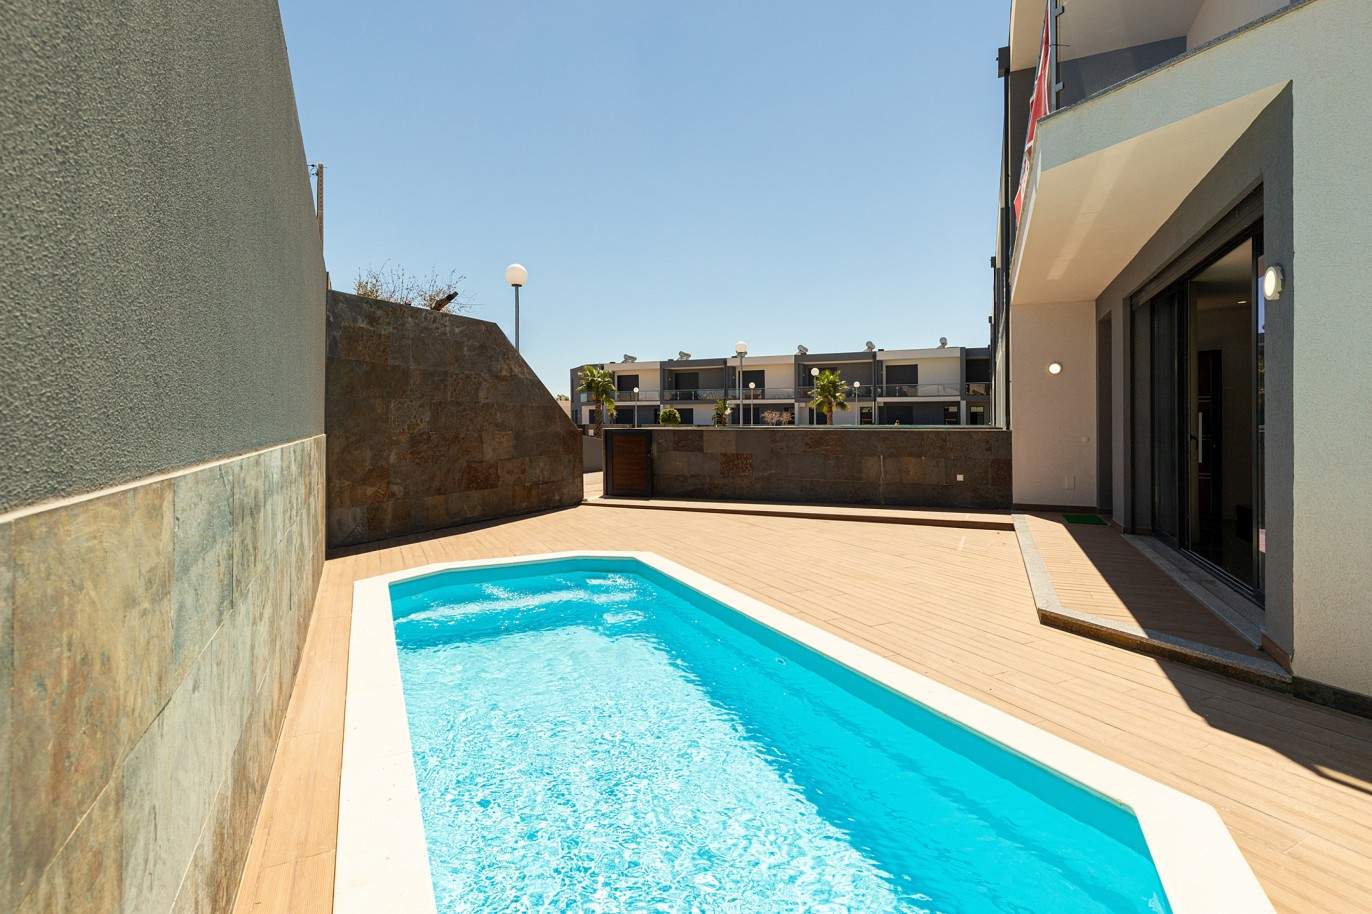 Venda de moradia nova com piscina em Albufeira, Algarve_200667